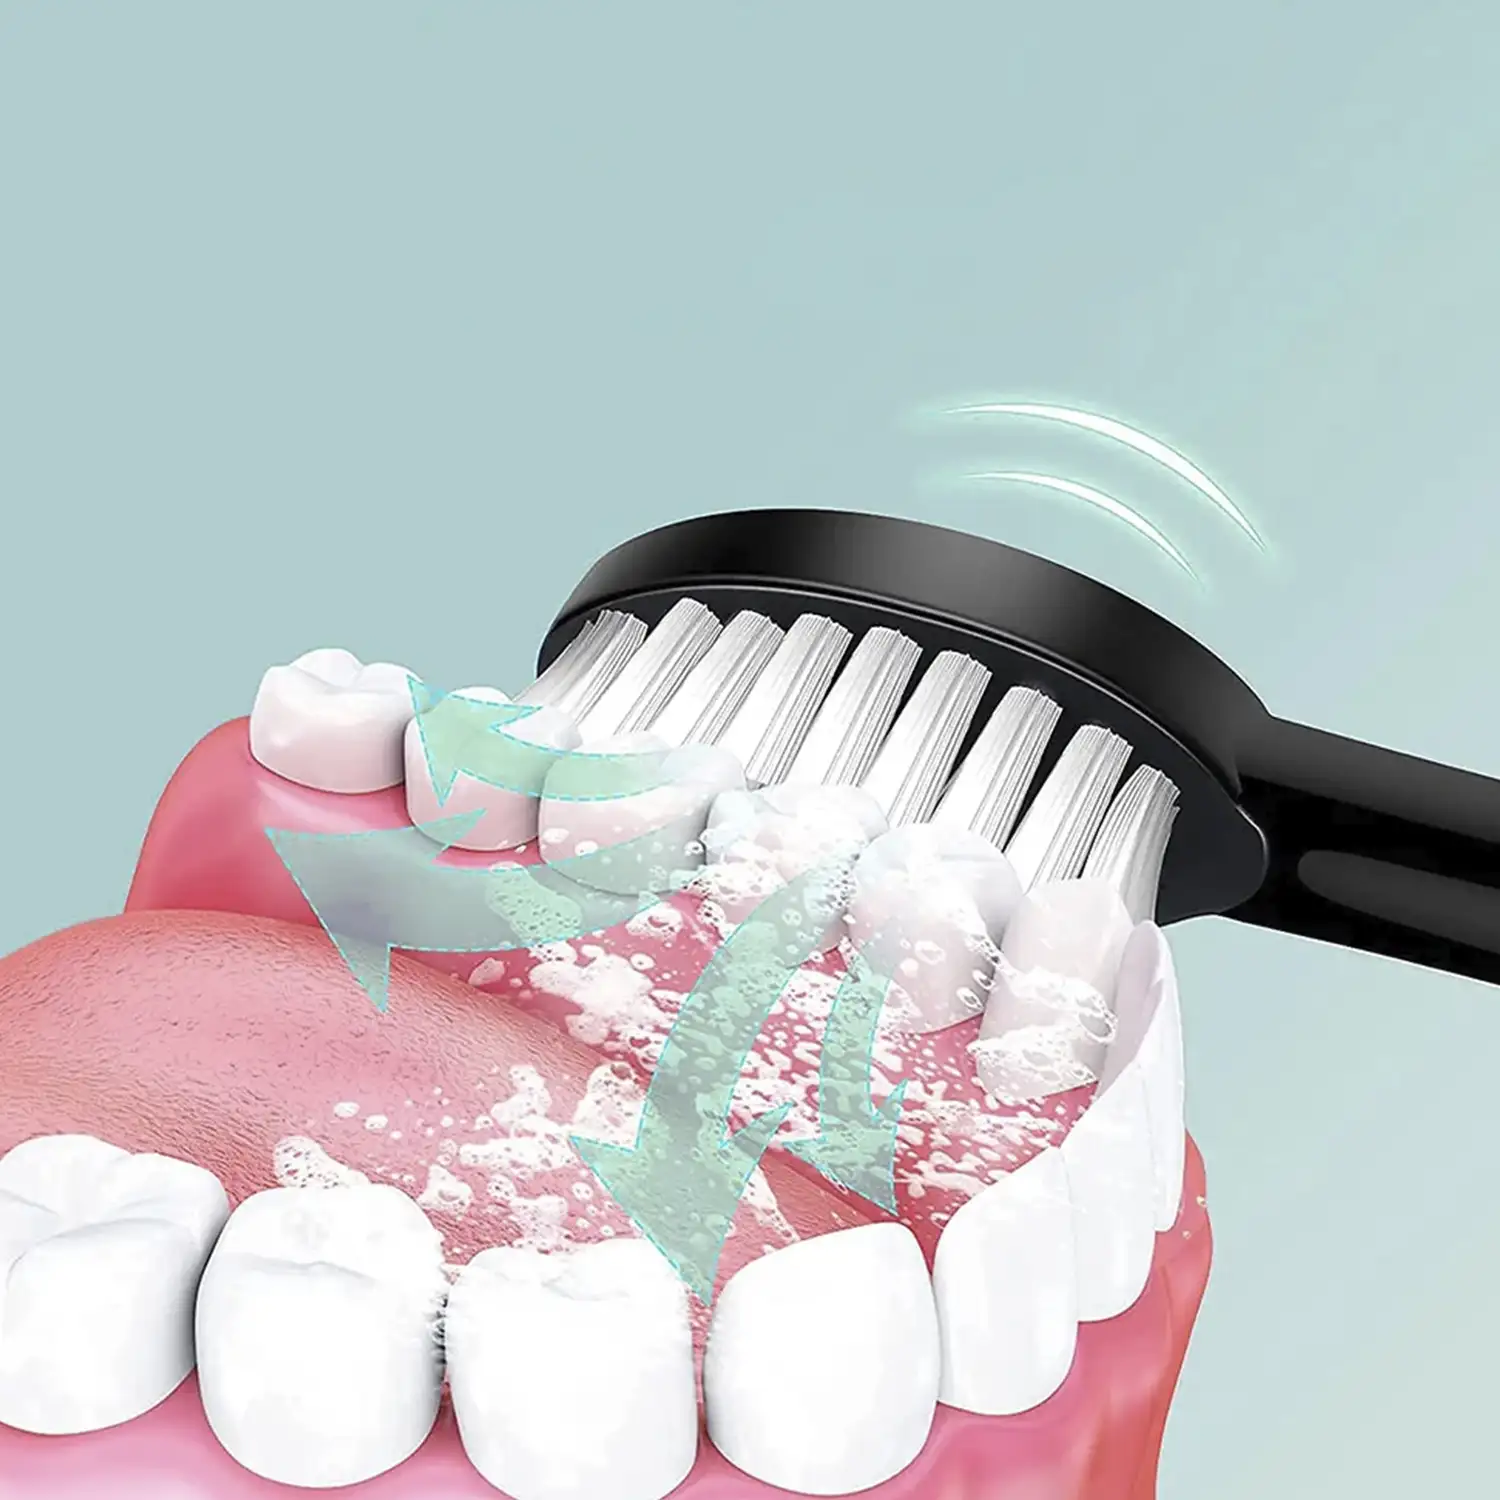 Cepillo de dientes eléctrico sónico 330. Modos limpiar, pulir, blanquear, sensible y masaje. Incluye 5 cabezales.